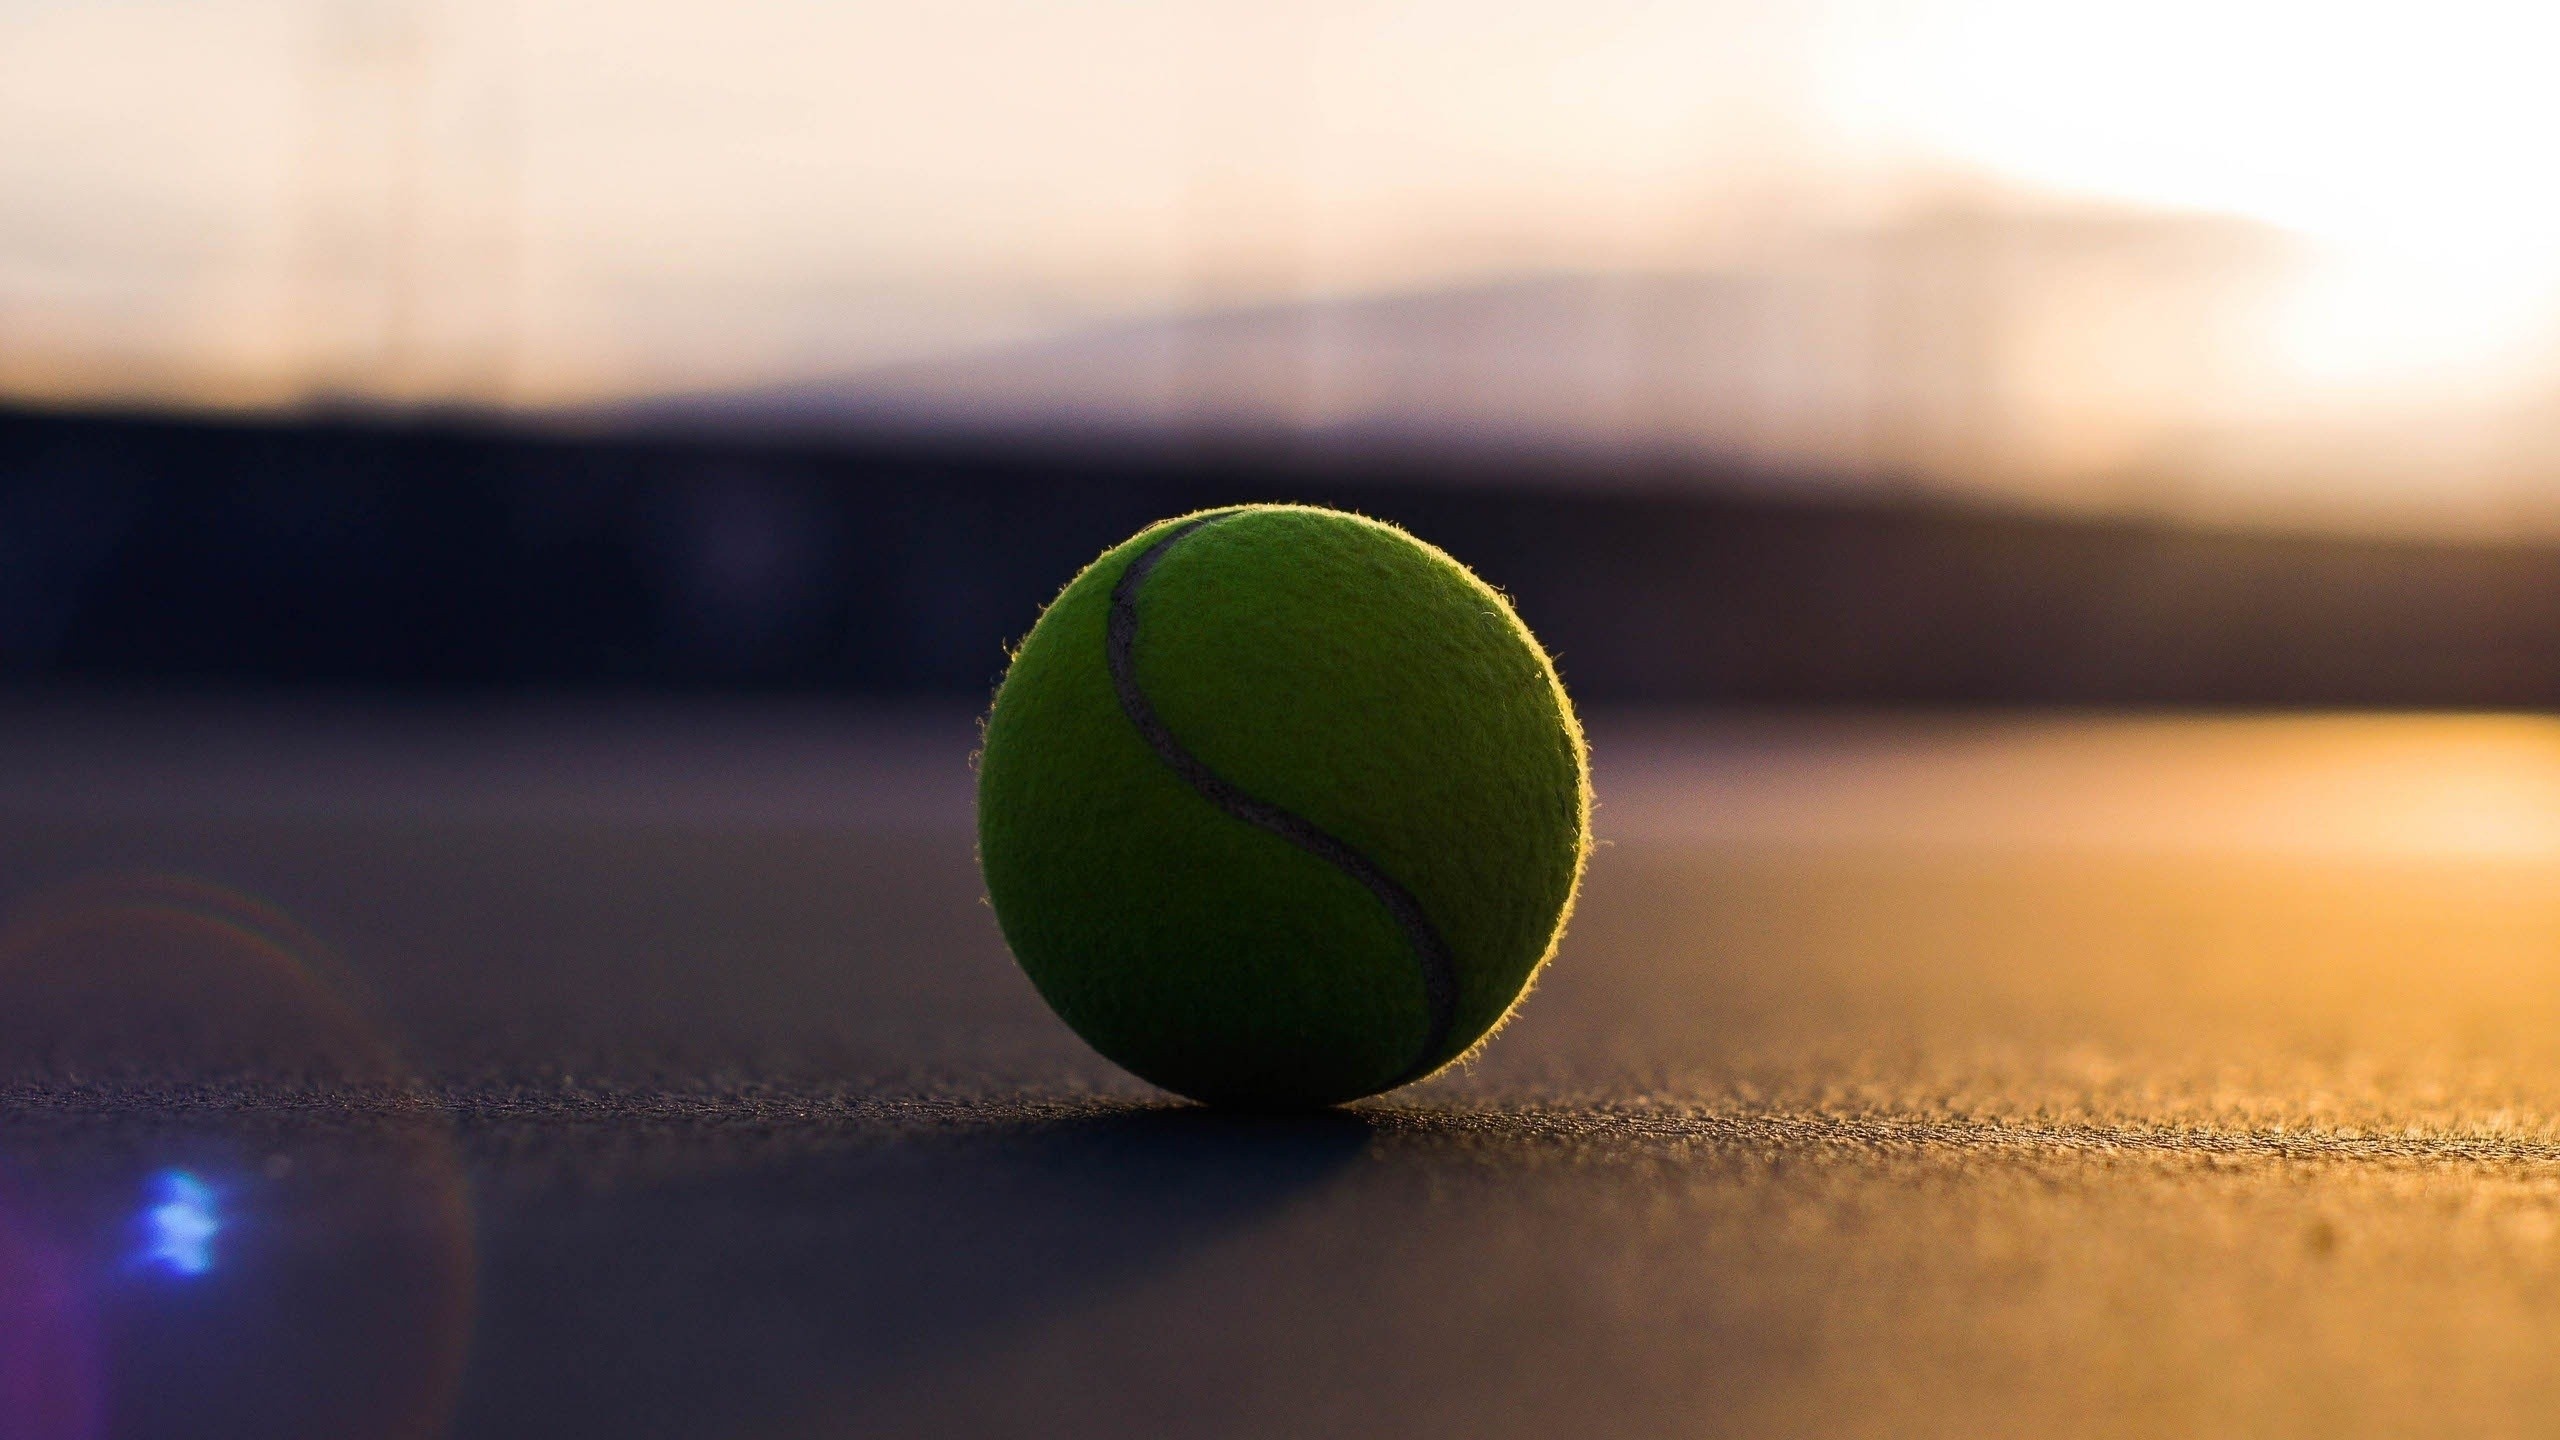 ボール壁紙hd,緑,テニスボール,テニス,テニスコート,スポーツ用品